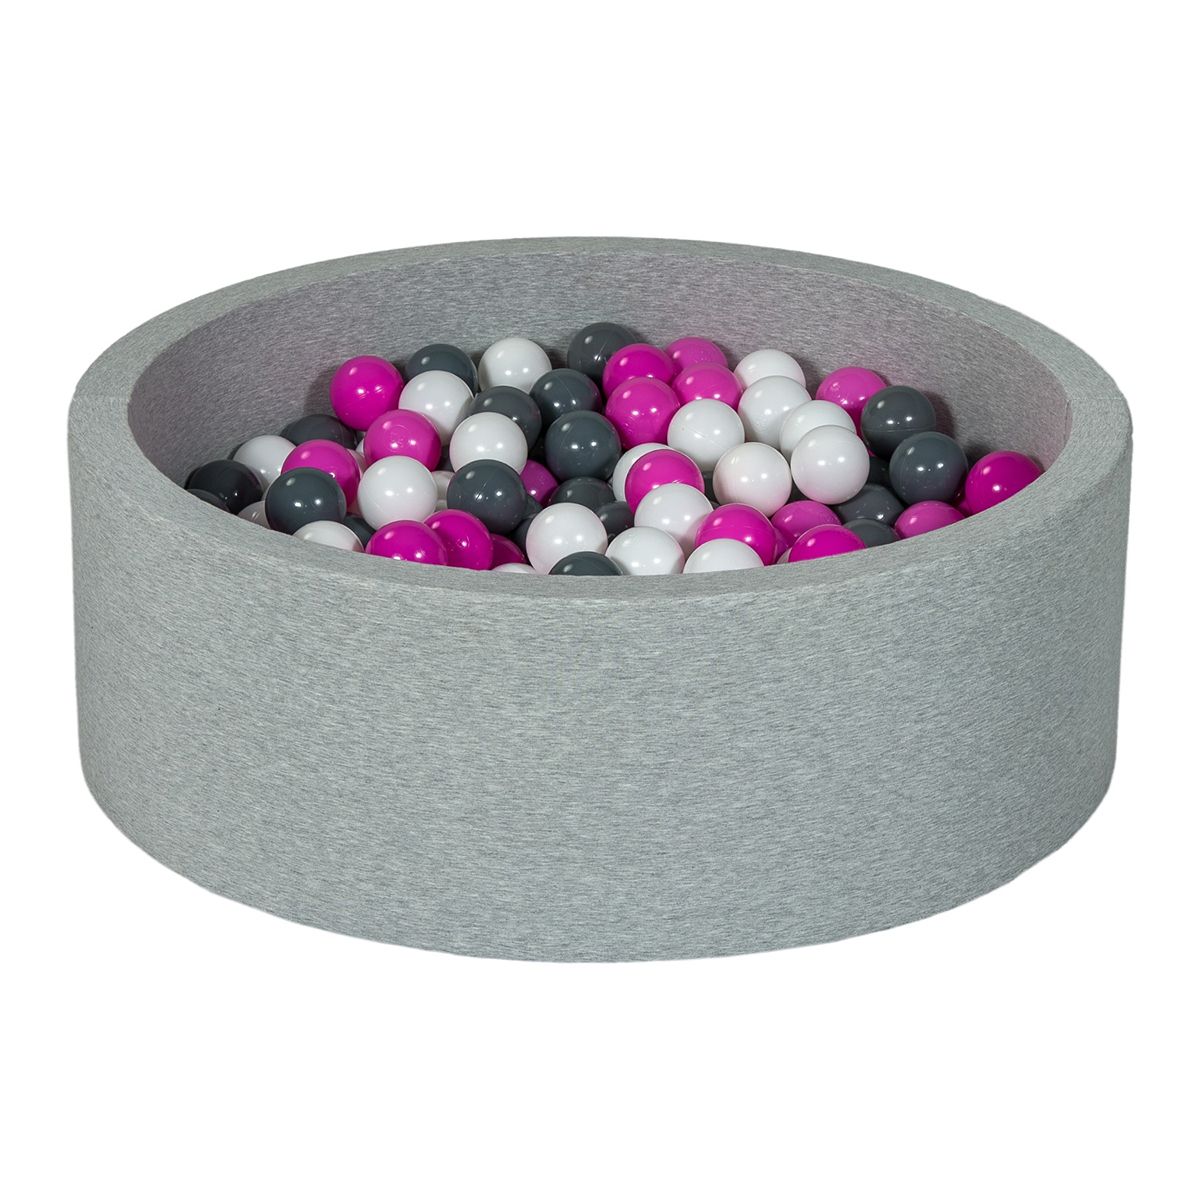  Piscine à balles Aire de jeu + 300 balles blanc, rose, gris